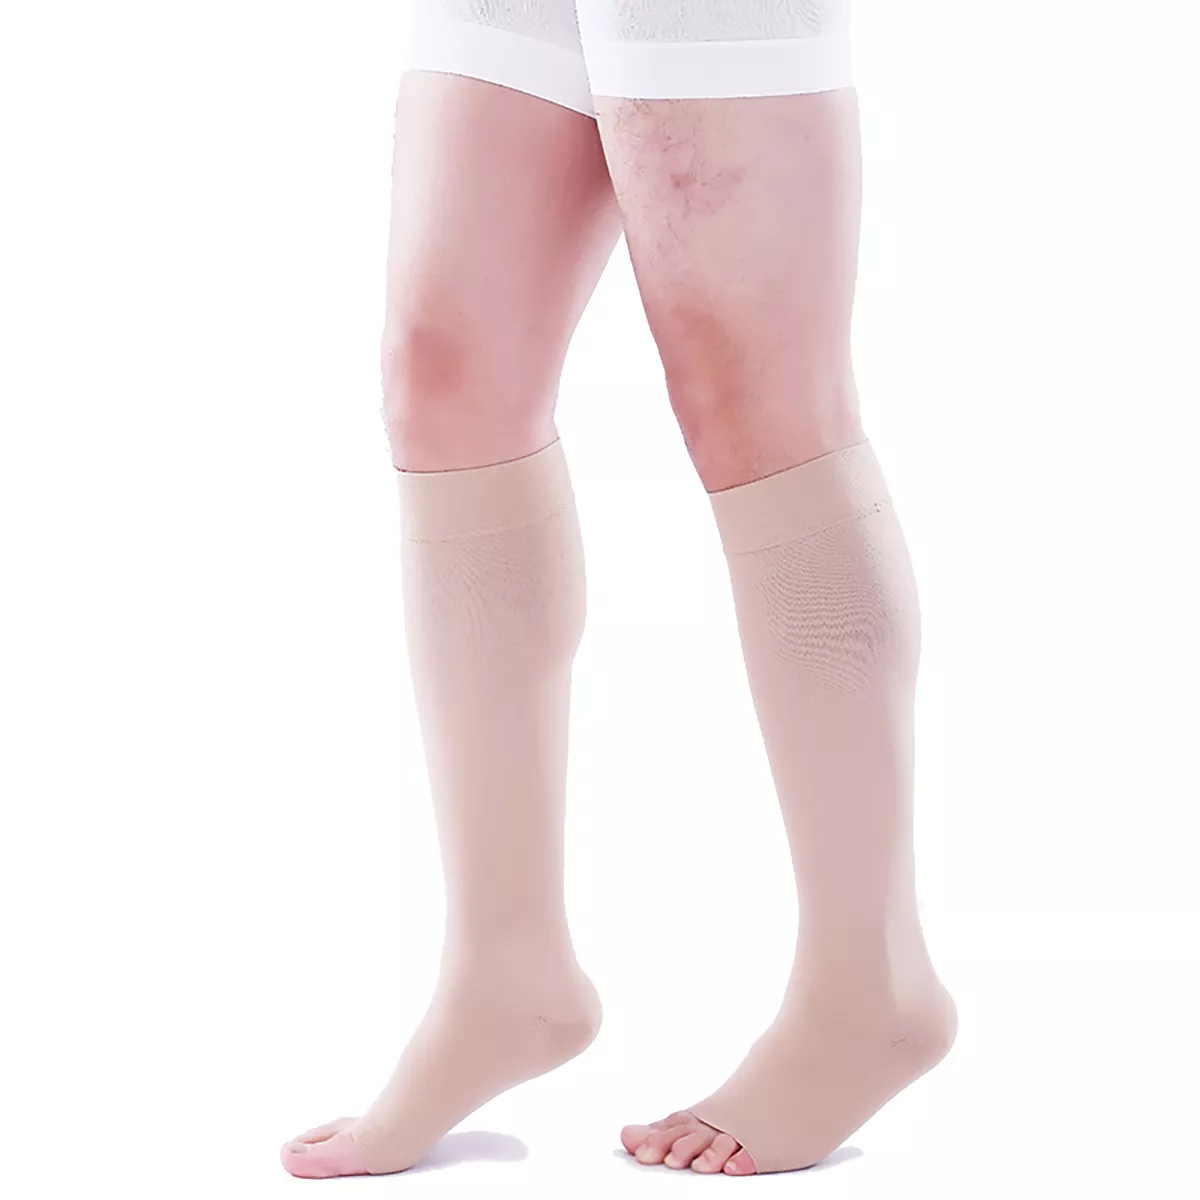 Varcoh ® 8-15 mmHg Men Knee High Open Toe Compression Socks Beige